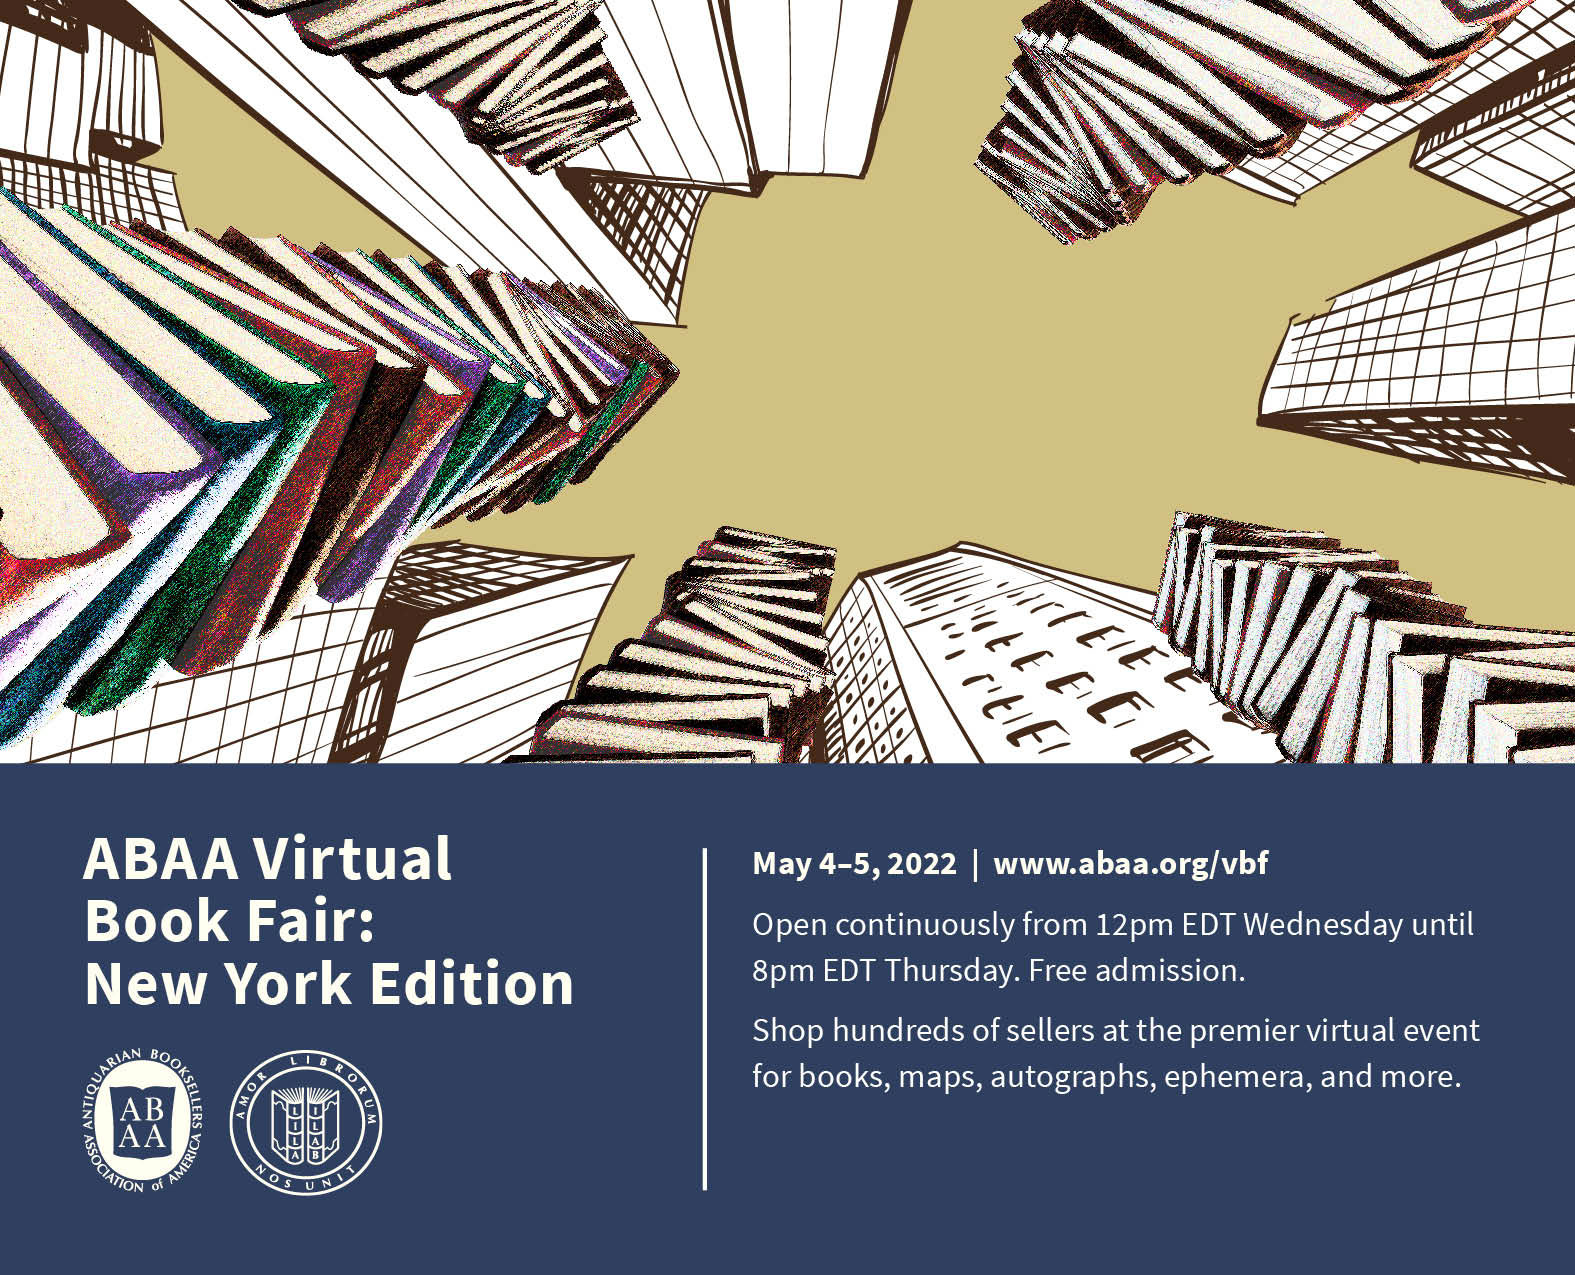 ABAA VBF: New York Edition